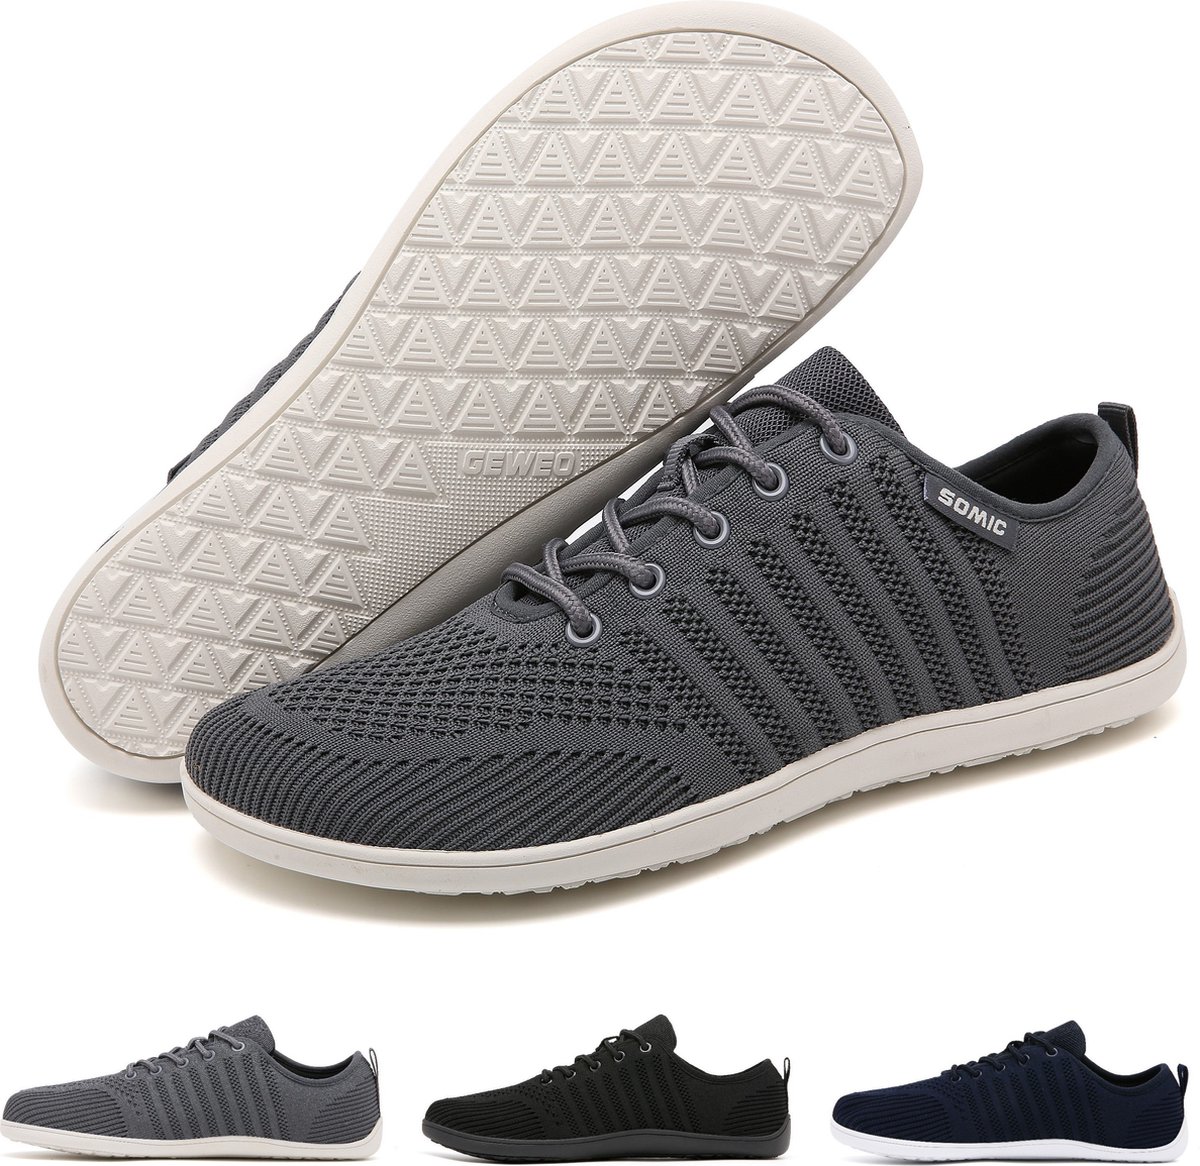 Somic Barefoot Schoenen - Sportschoenen Sneakers - Fitnessschoenen - Hardloopschoenen - Ademend Knit Textiel - Platte Zool - Grijs - Maat 44